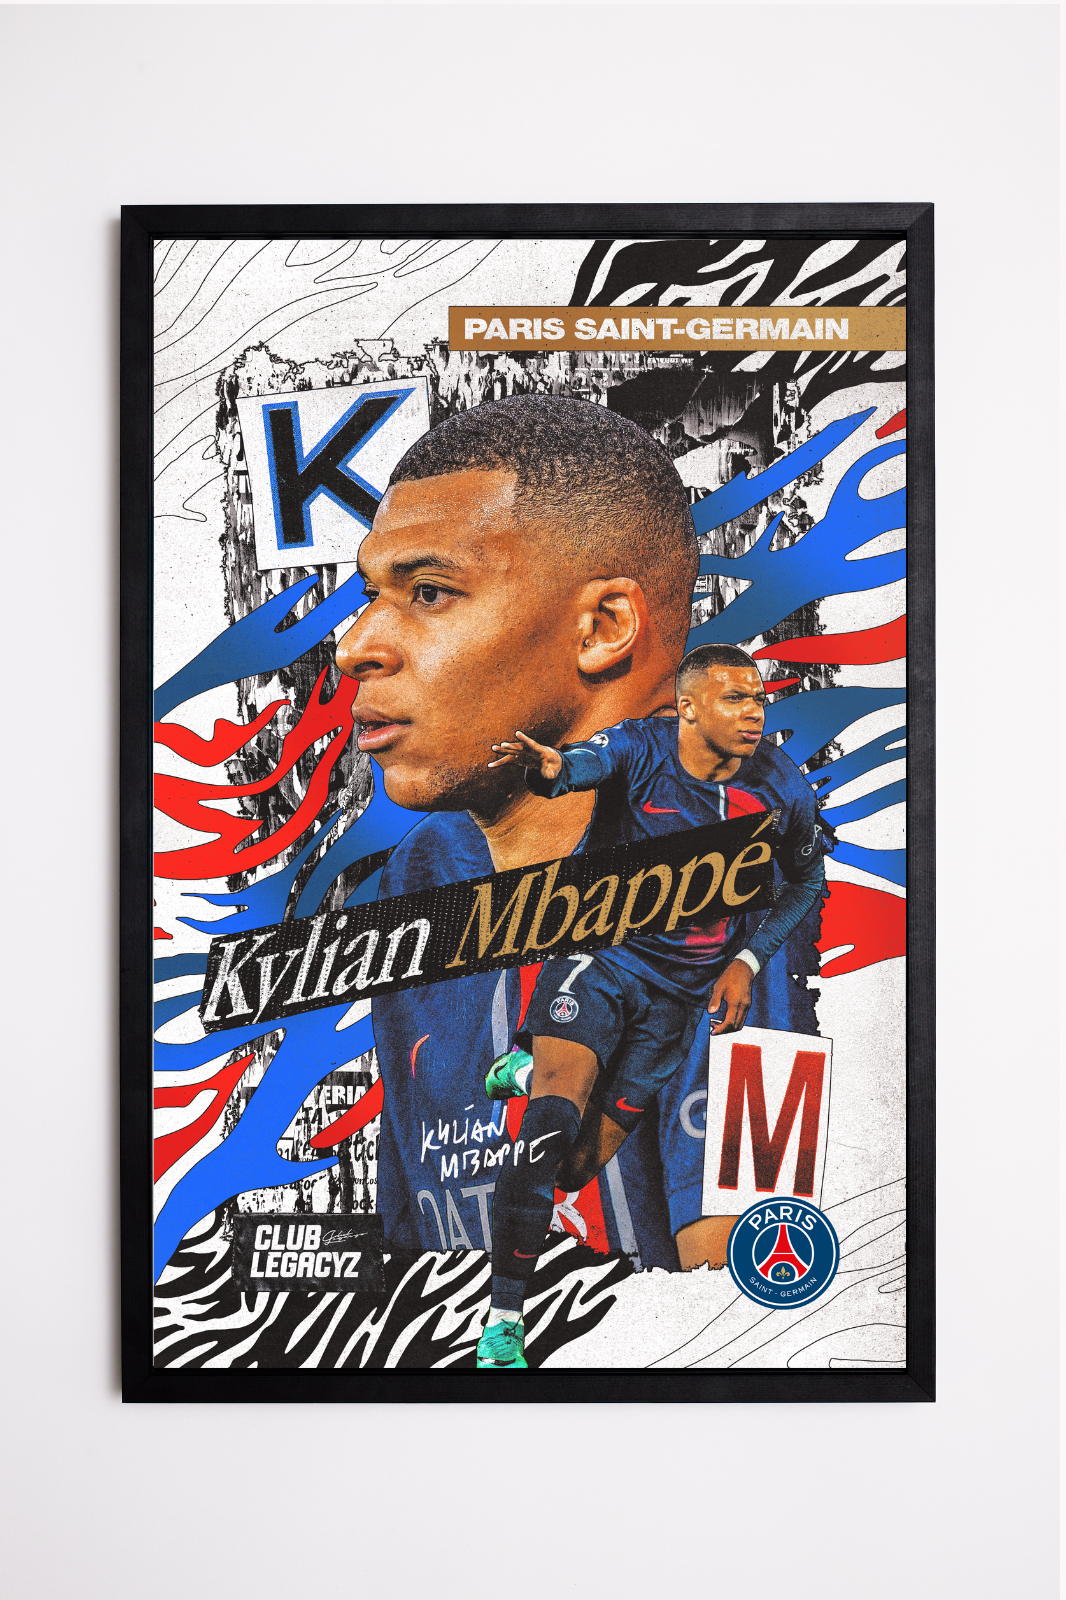 Paris Saint-Germain - Kylian Mbappé Poster limited to 999